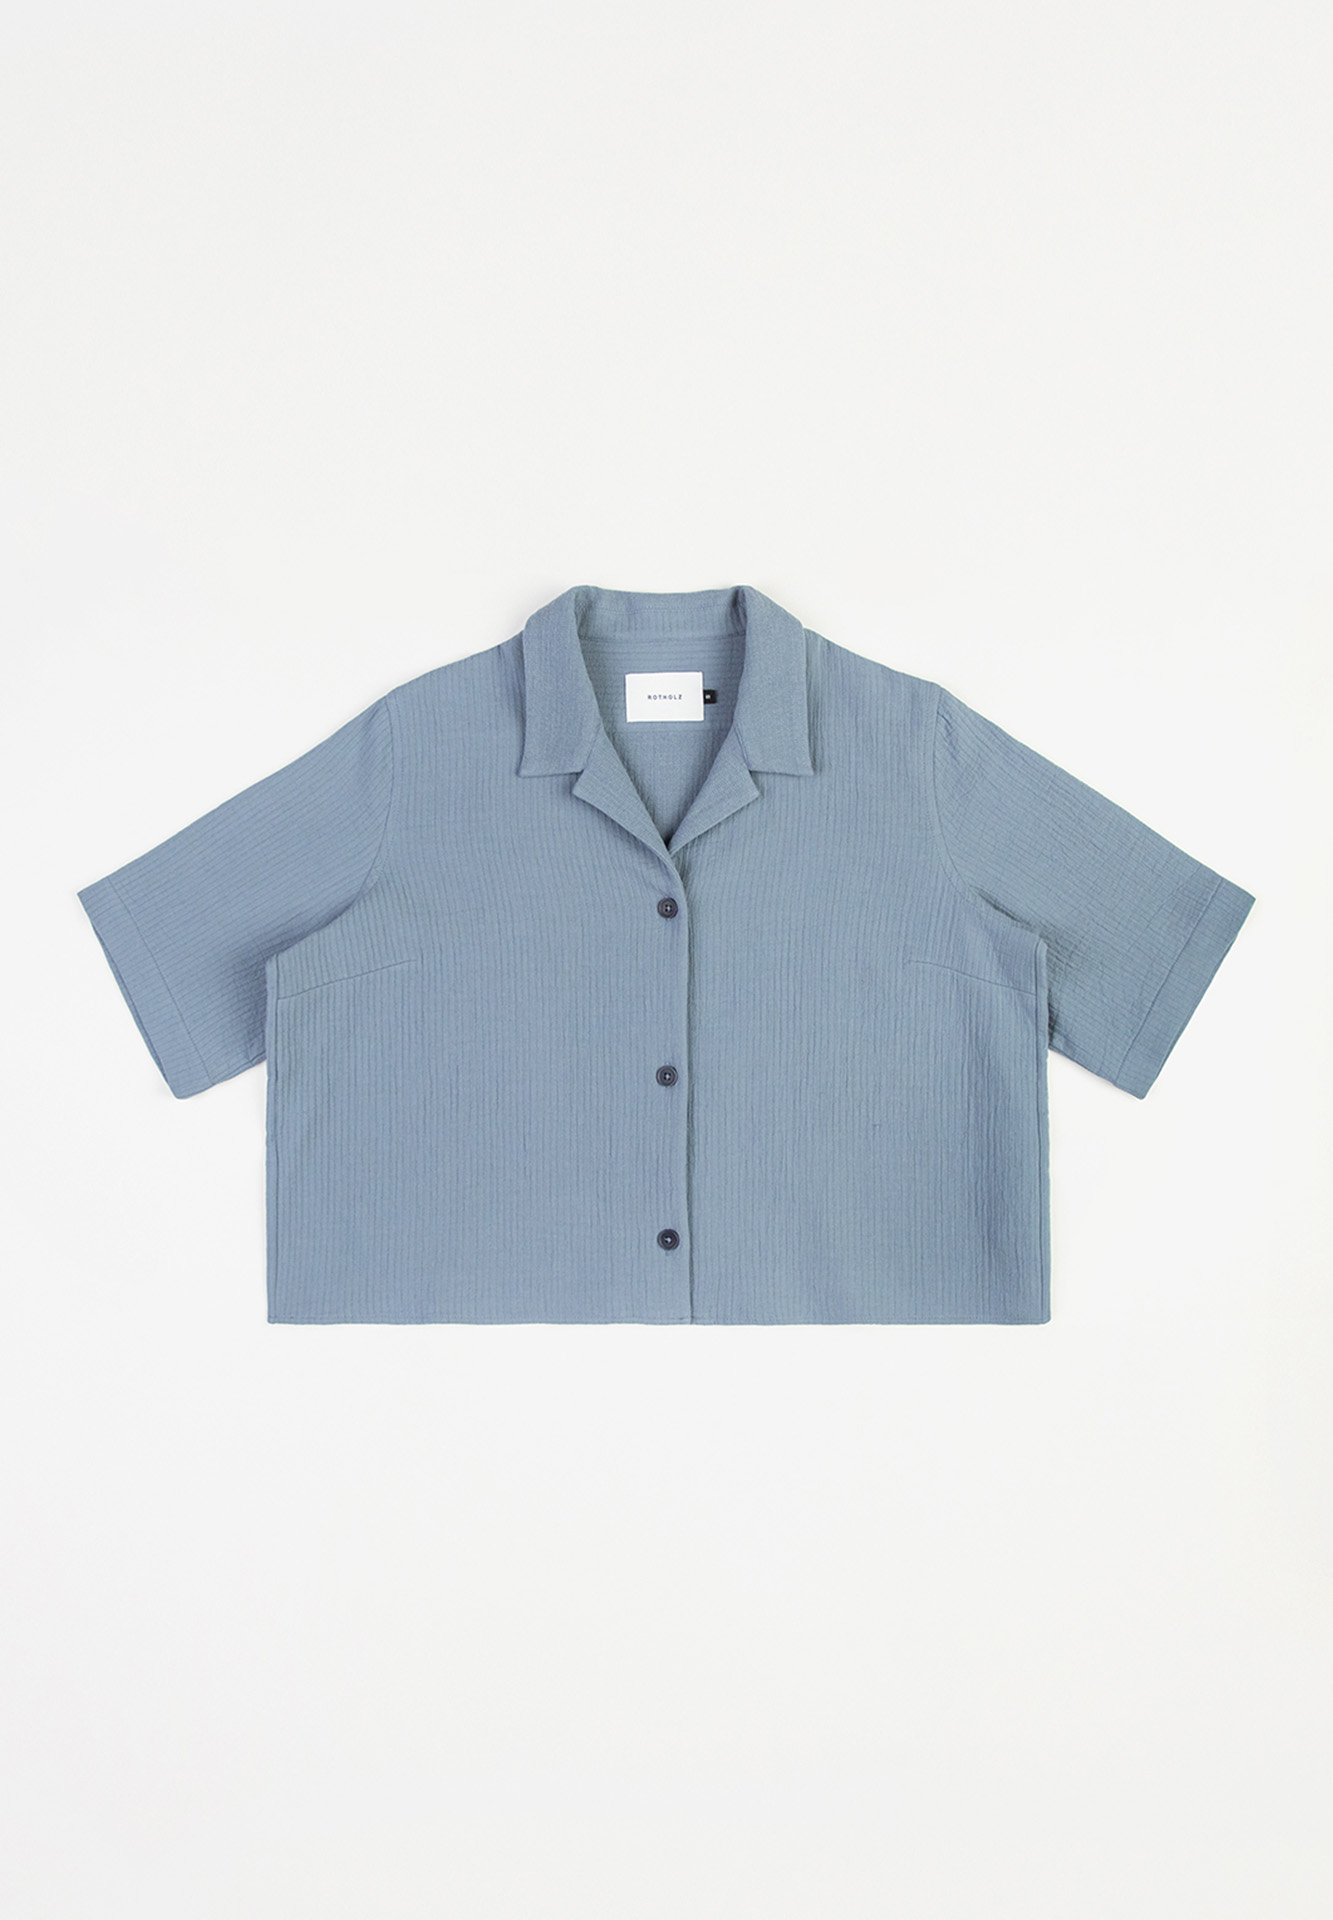 ROTHOLZ Cropped Bowling Shirt stone blue XS